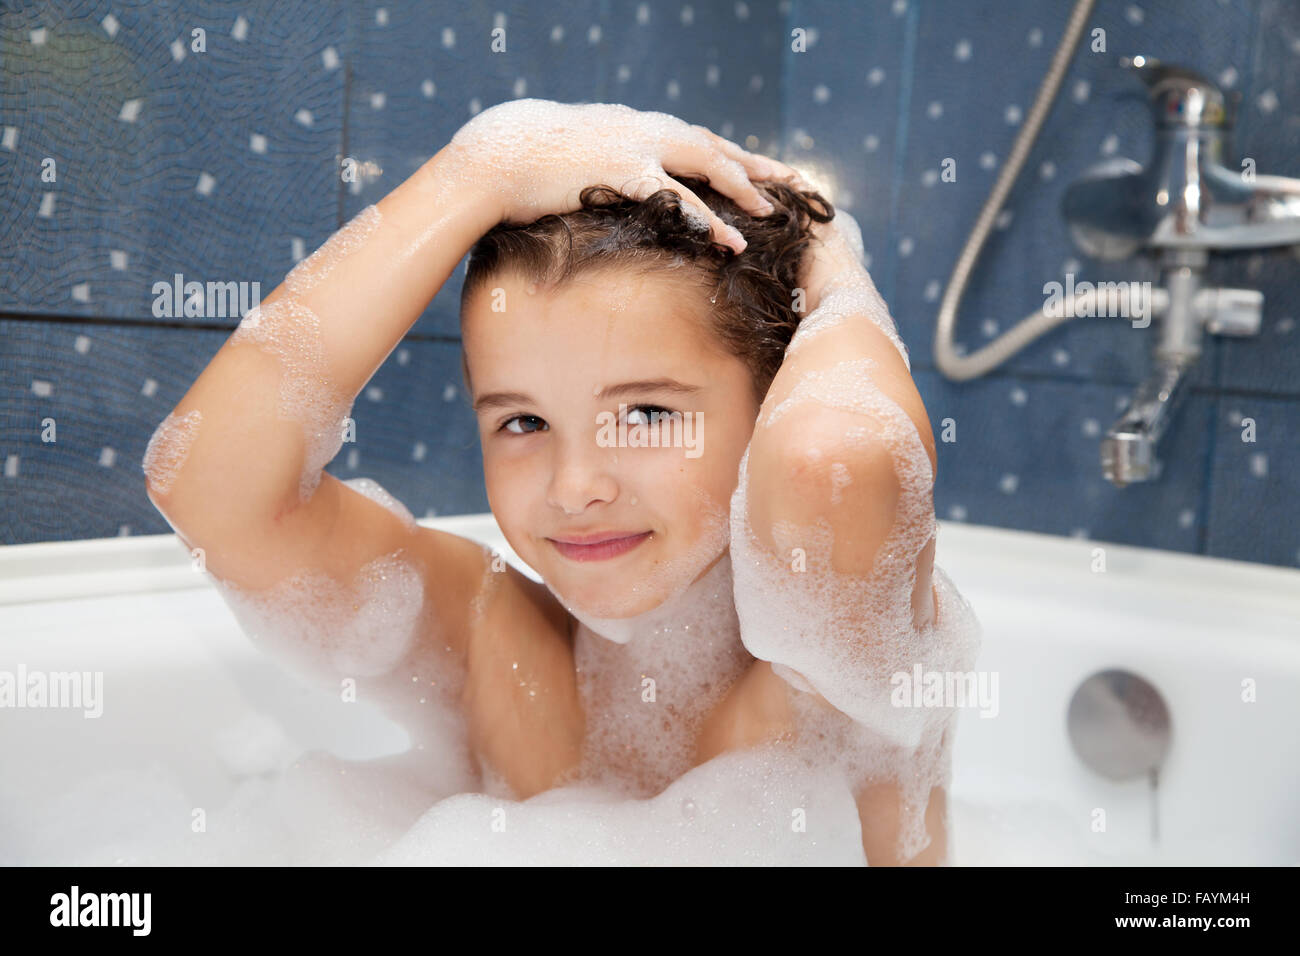 Petite fille se lave la tête dans la baignoire libre Photo Stock - Alamy